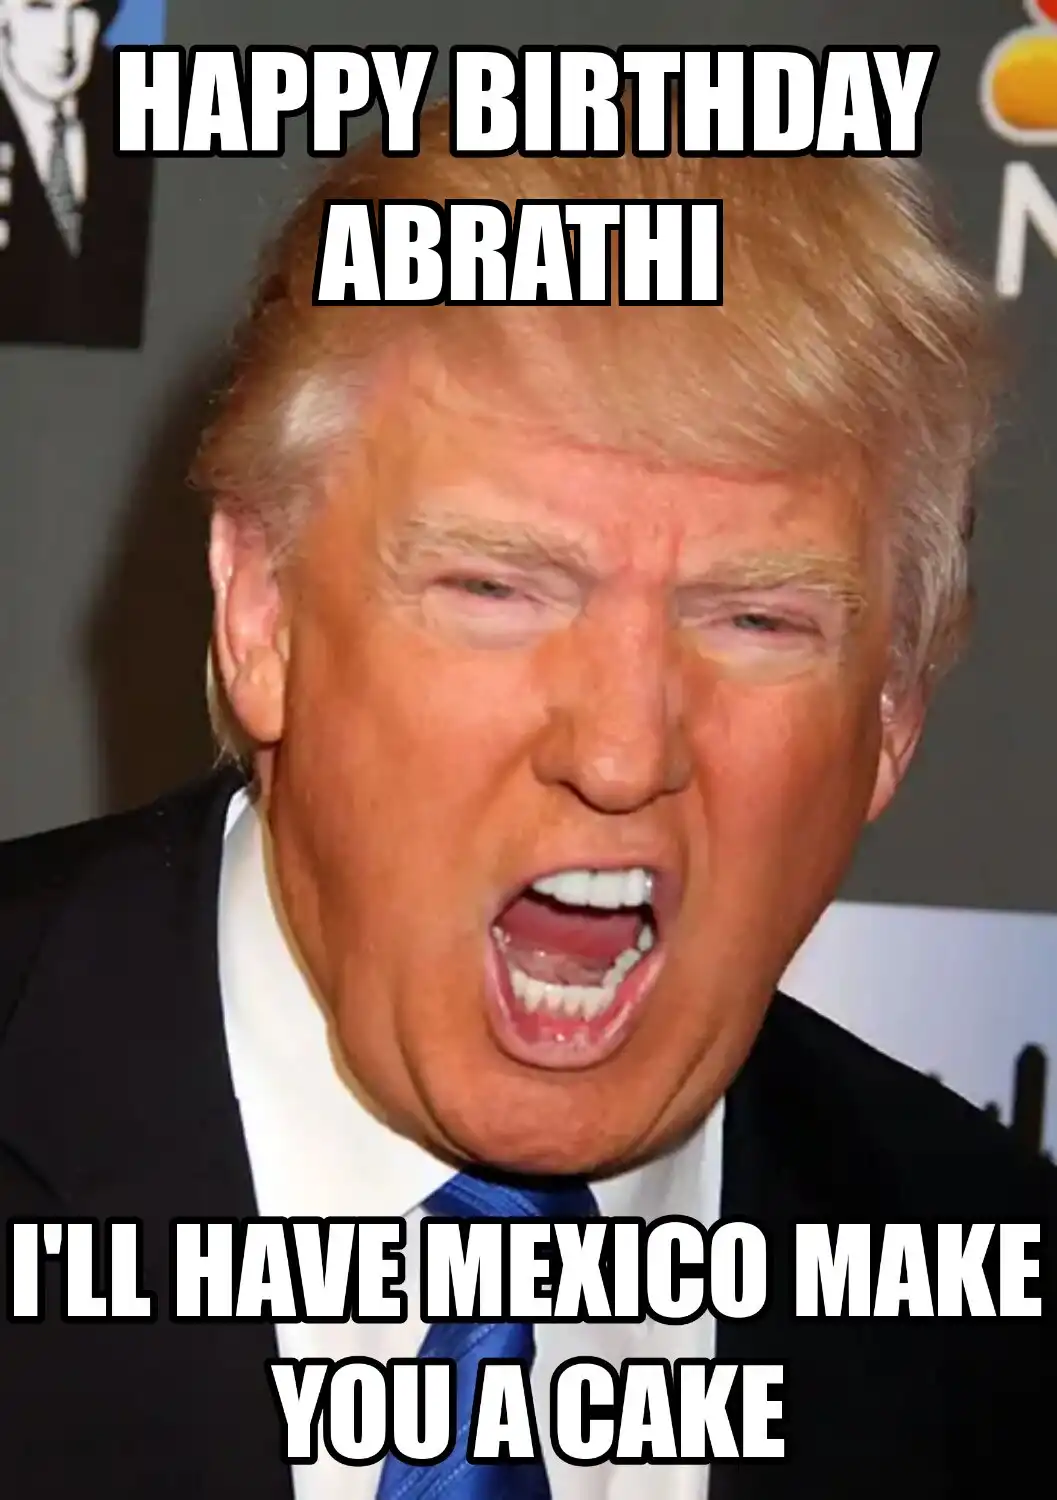 Happy Birthday Abrathi Mexico Make You A Cake Meme